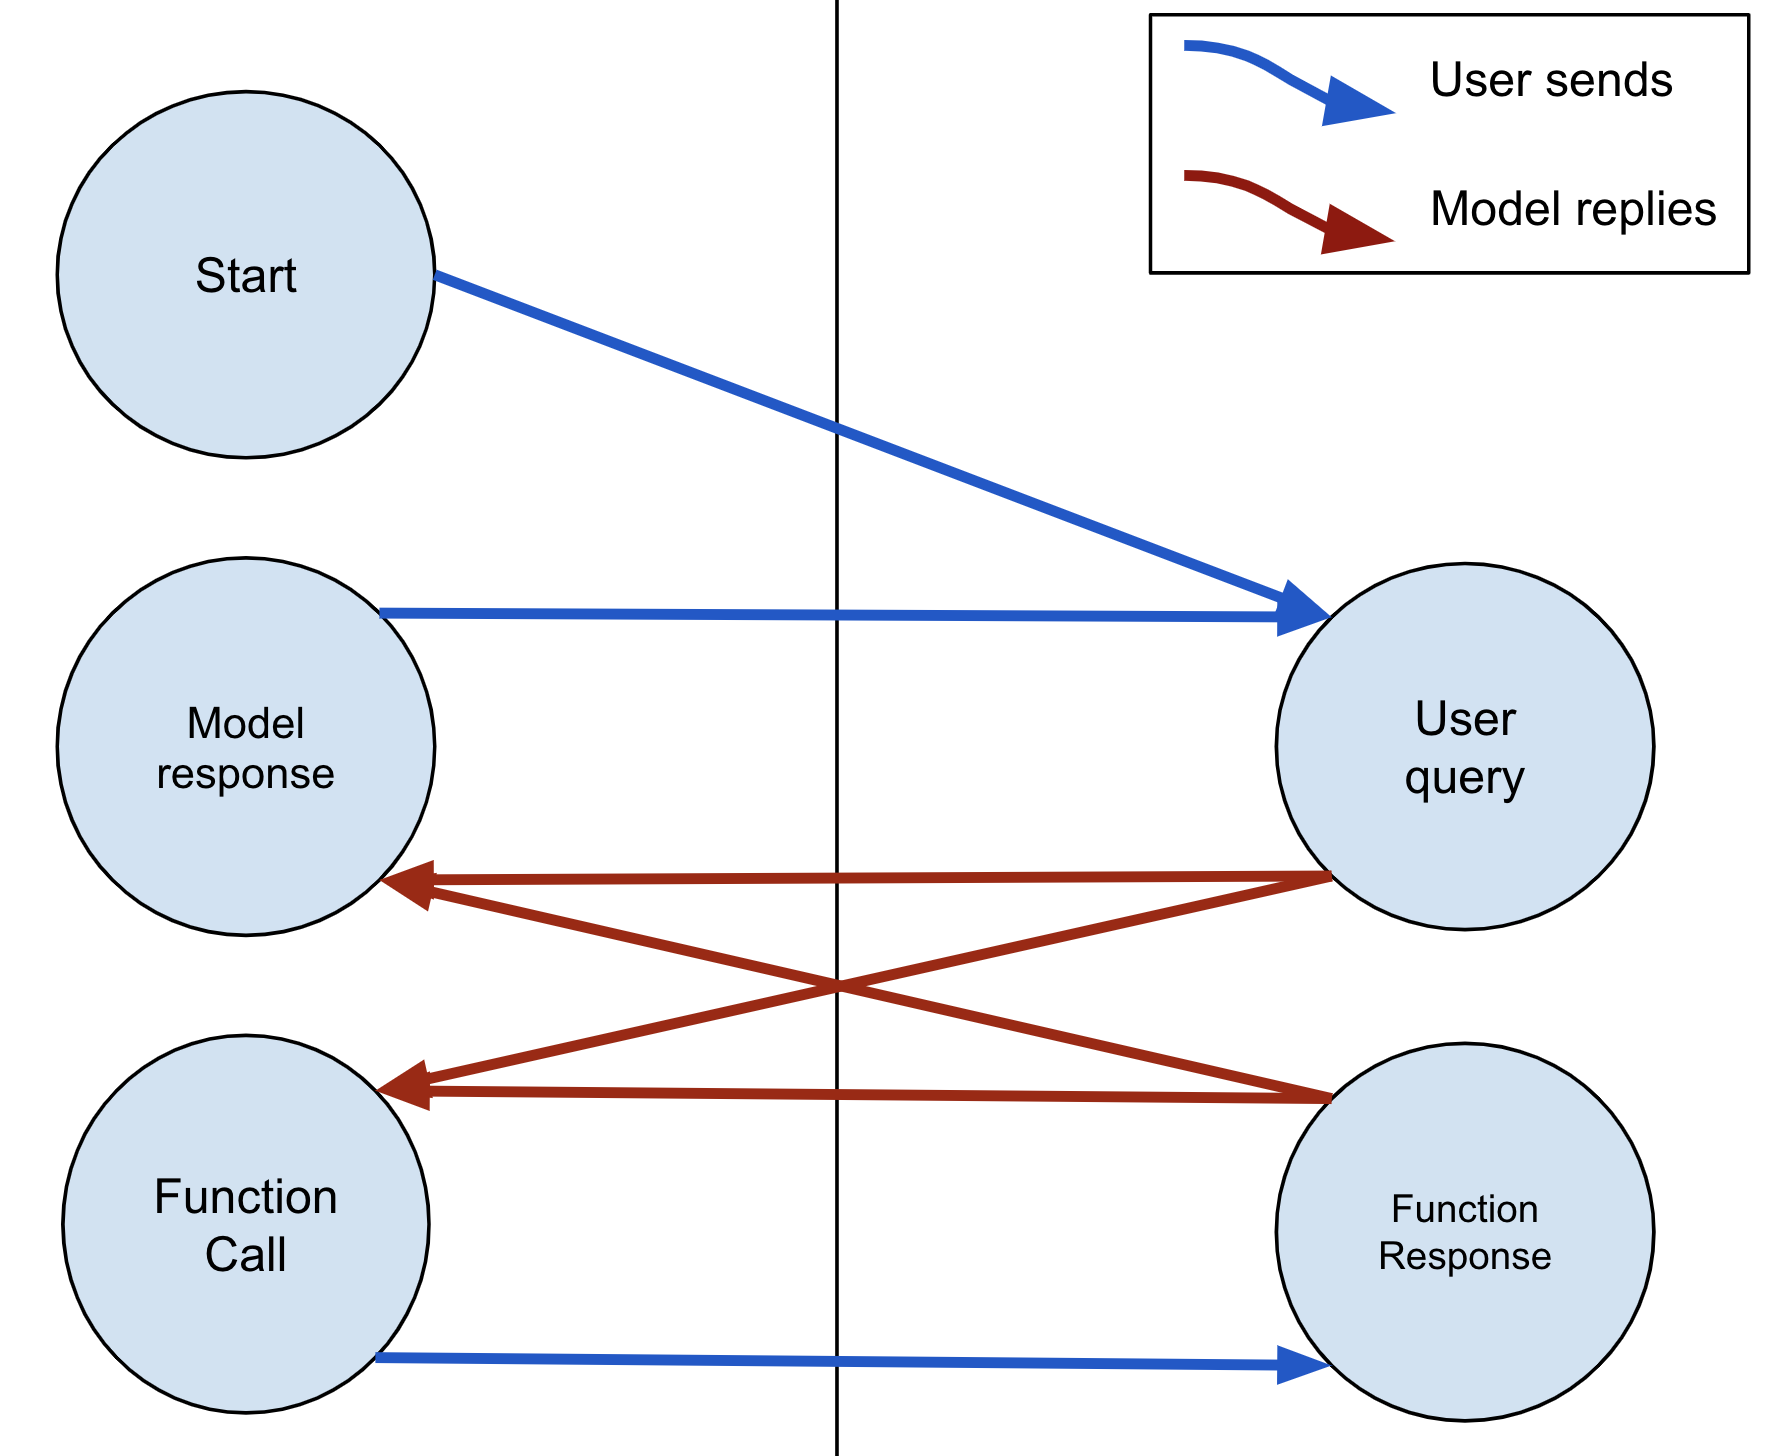 مدل همیشه می تواند با متن یا FunctionCall پاسخ دهد. اگر مدل یک FunctionCall ارسال کند، کاربر باید با یک FunctionResponse پاسخ دهد